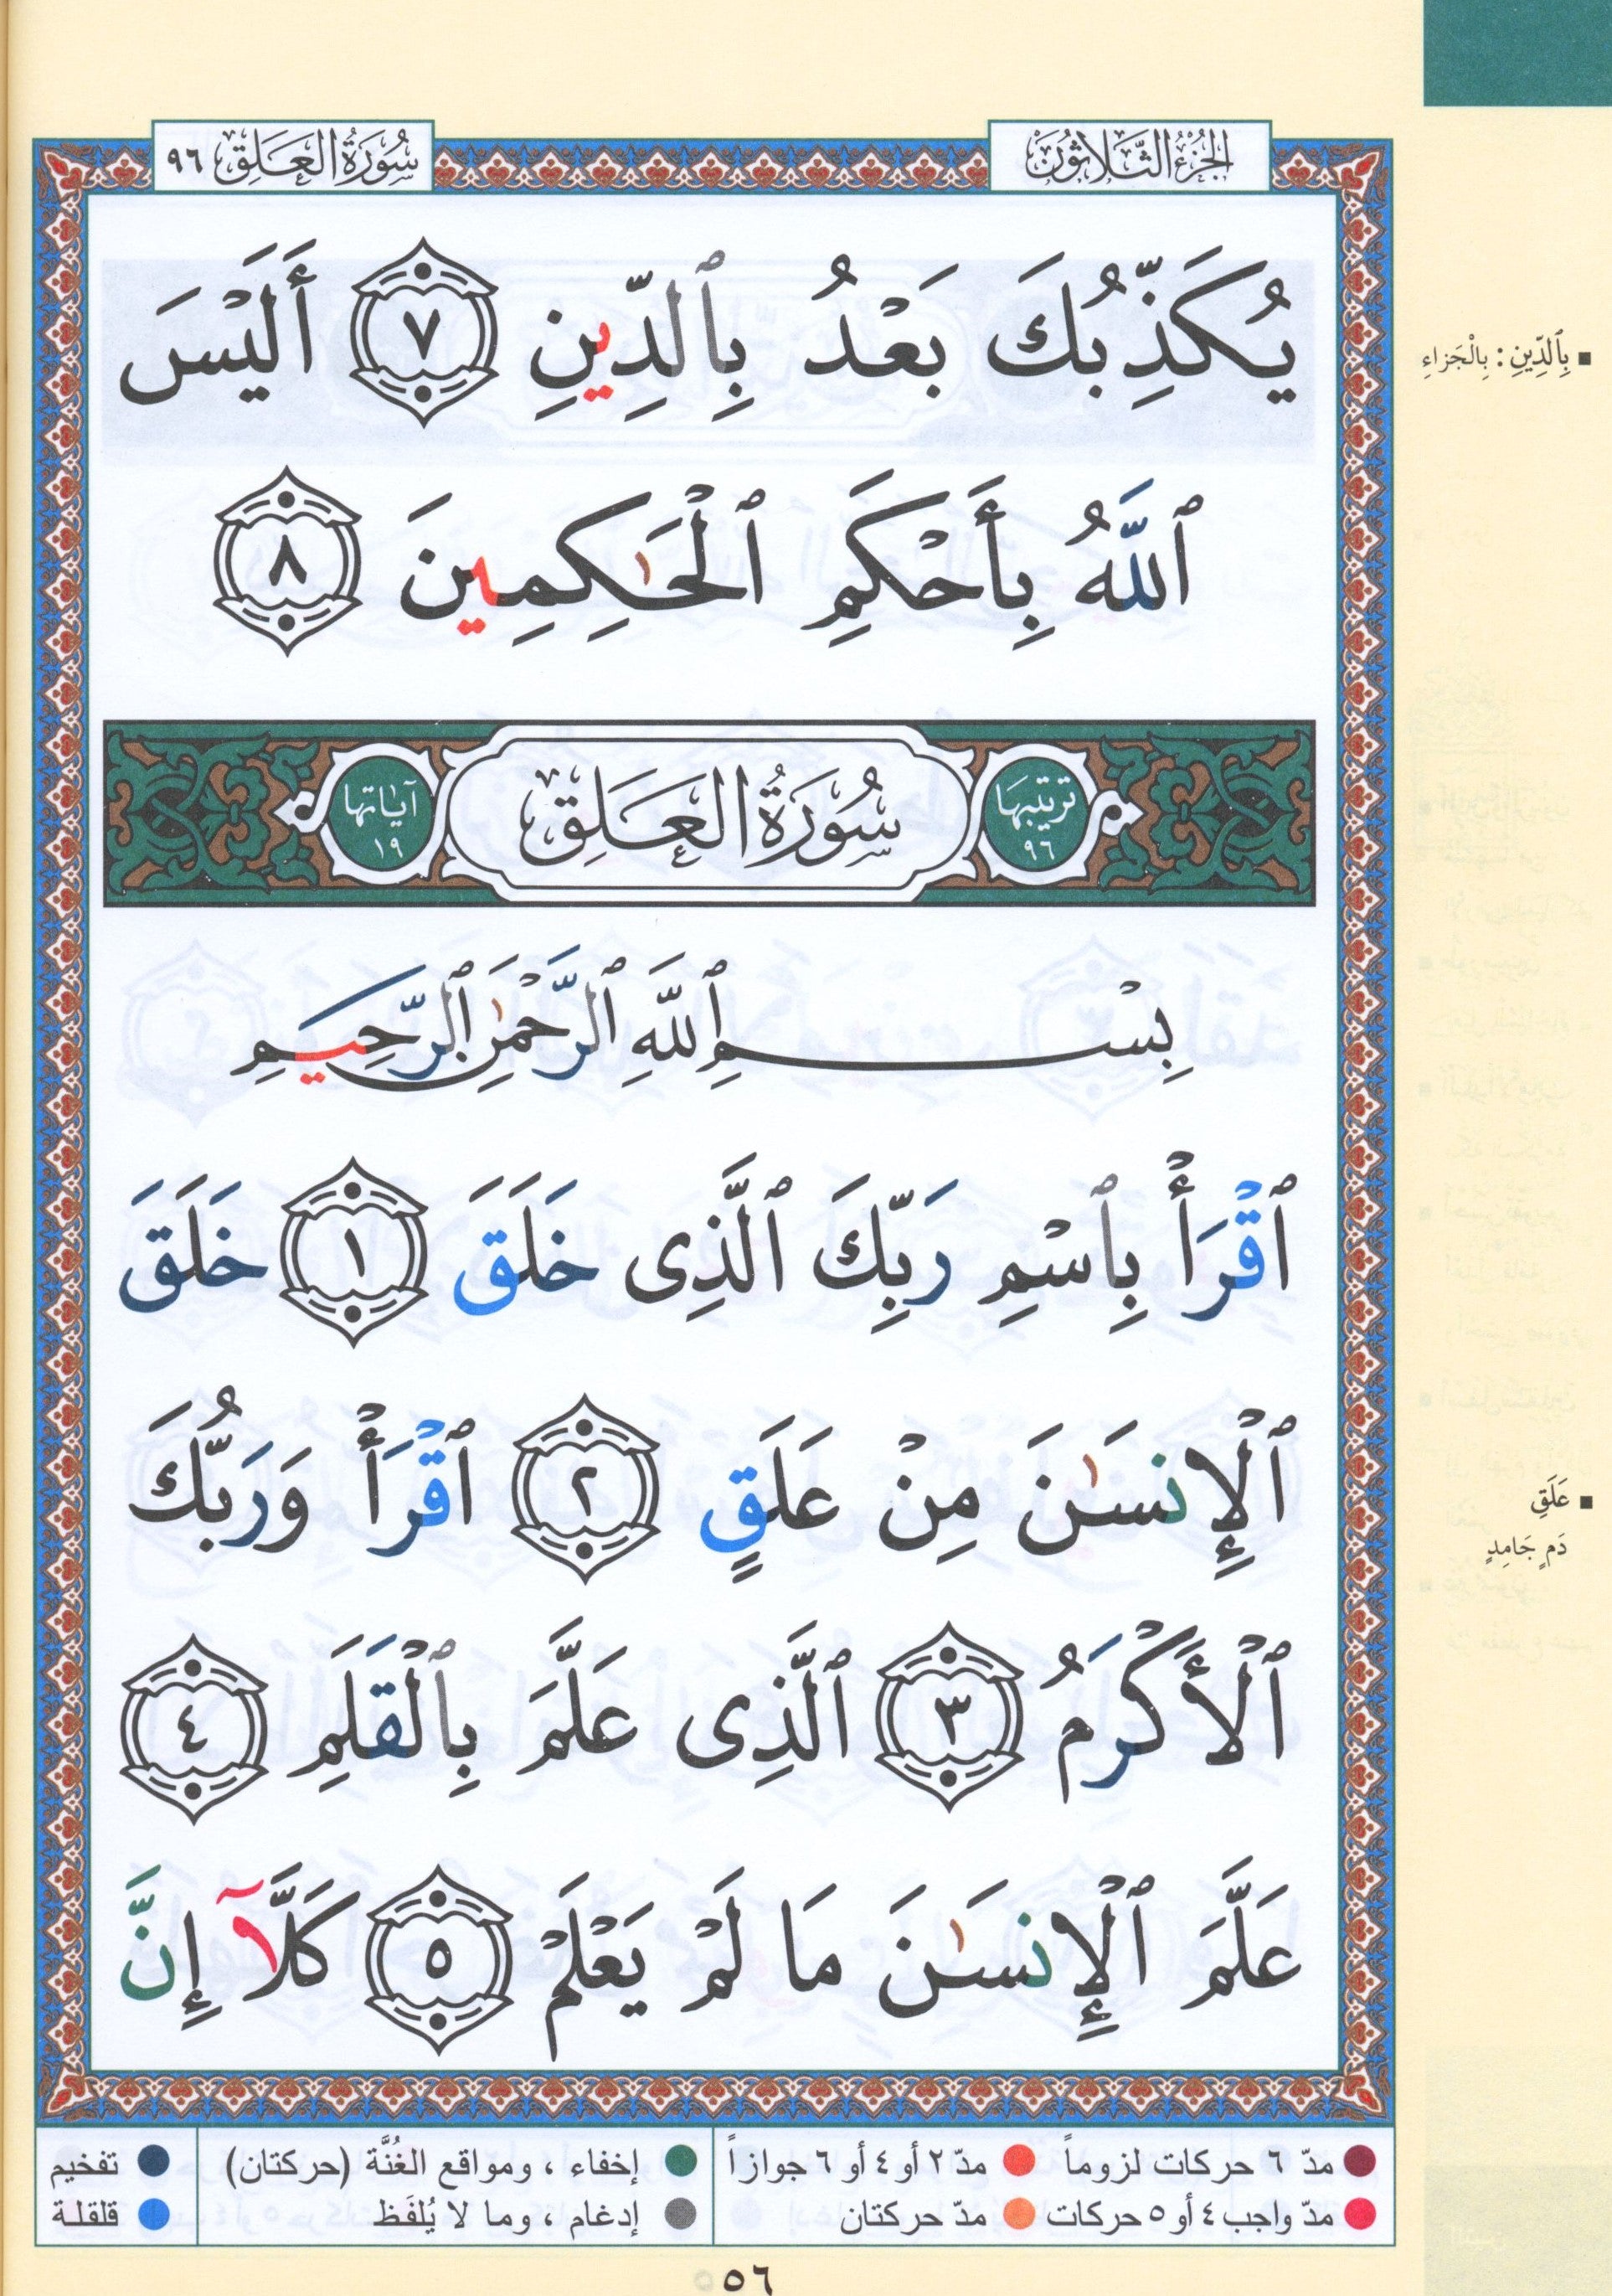 Tajweed Quran Juz' Amma Part 30 in Large Font (7" x 9")